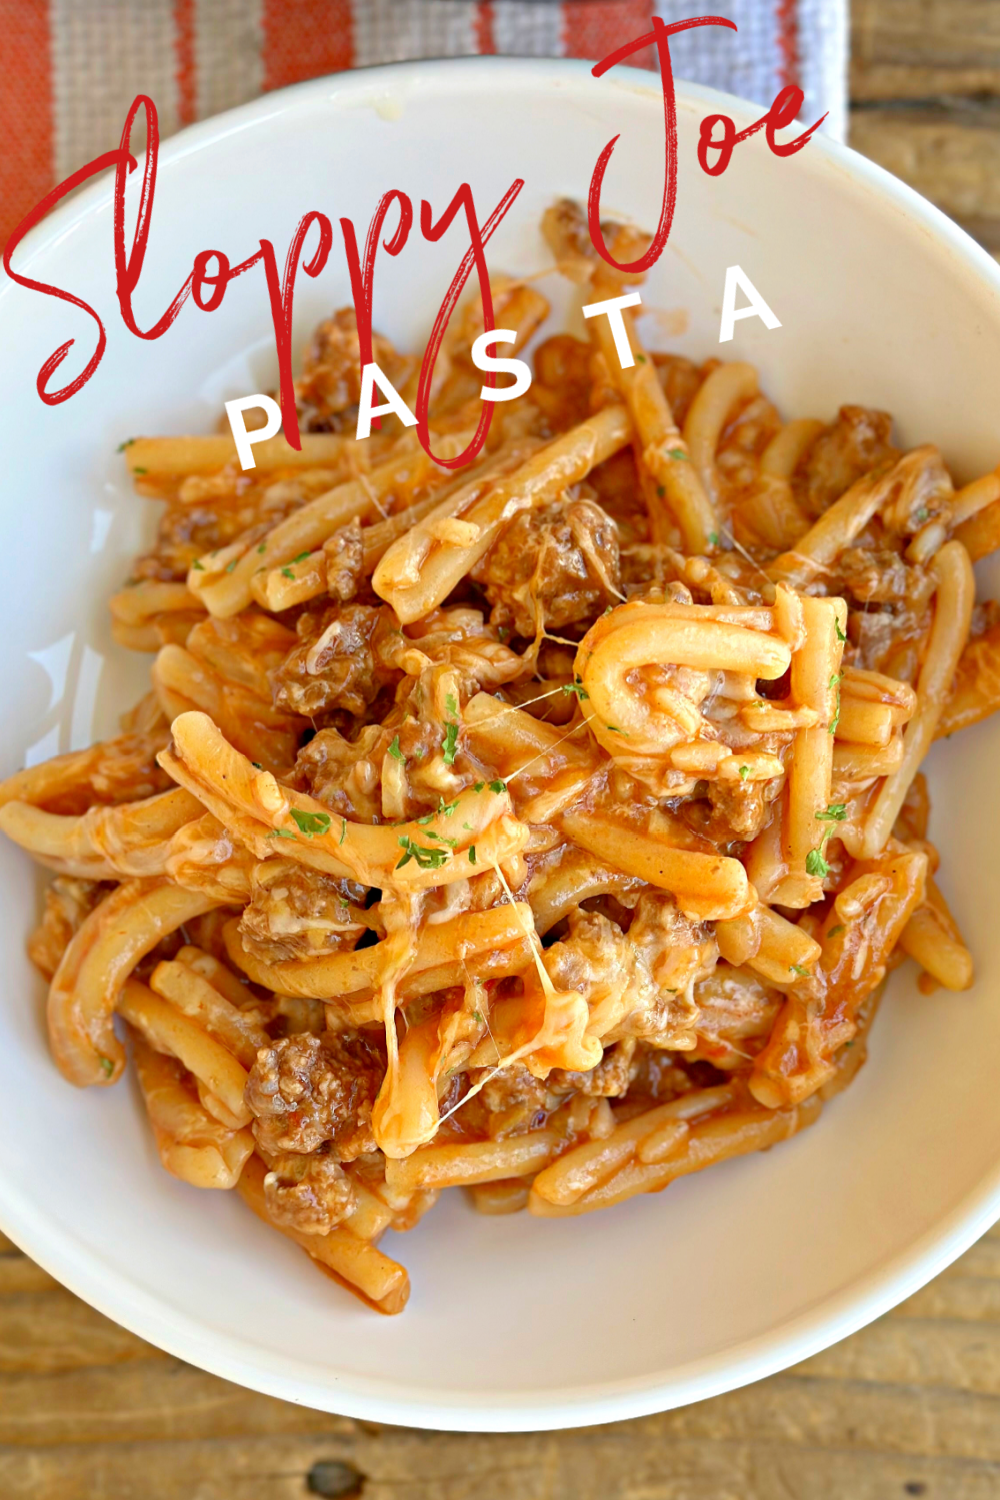 Sloppy Joe Pasta #sloppyjoes #beef #pasta #skilletdinner #onepanmeal #dinner #familydinner #easyrecipe